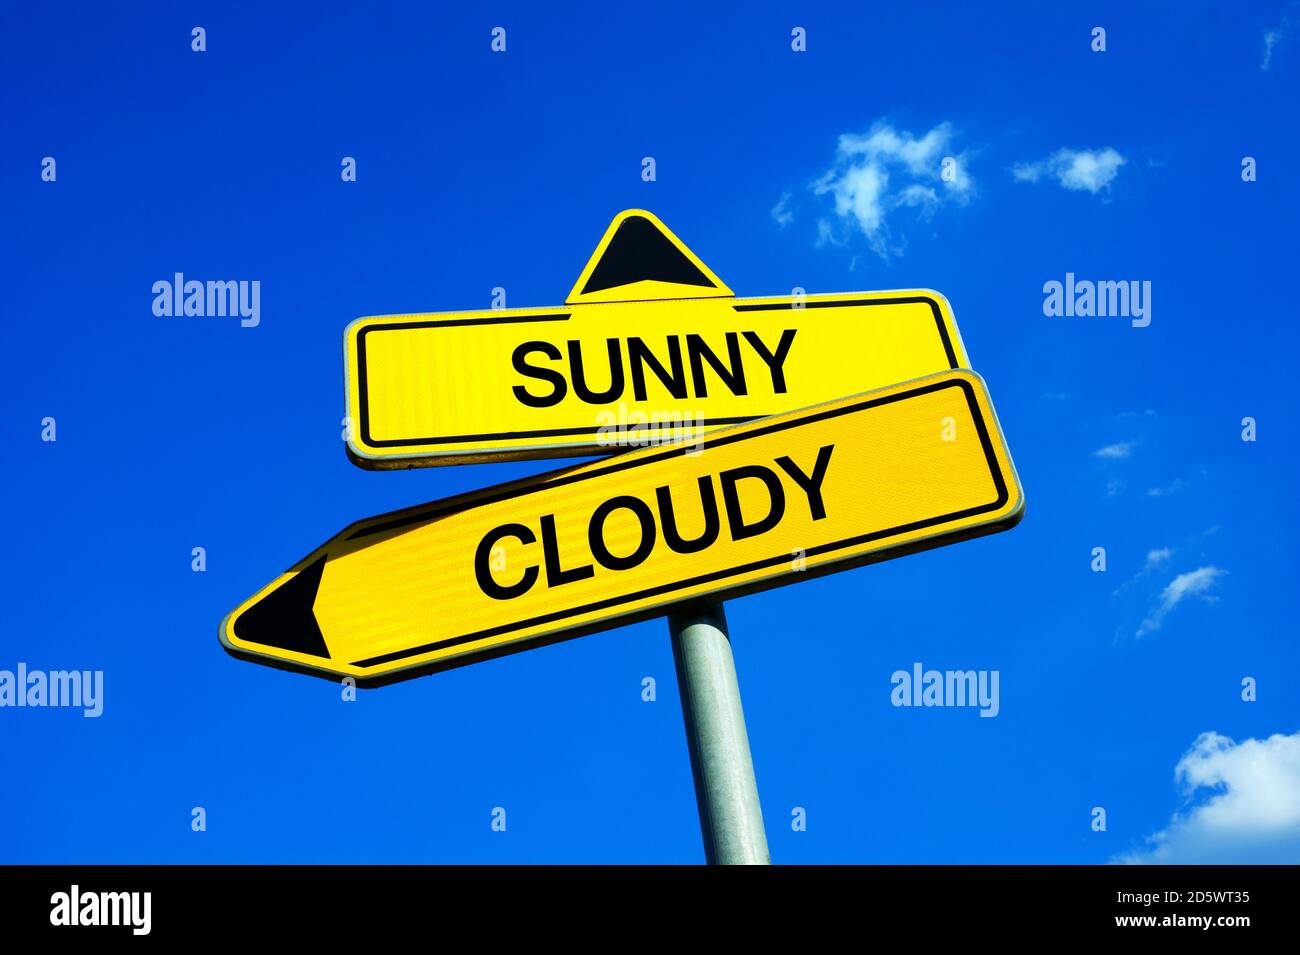 Sunny vs Cloudy - Verkehrsschild mit zwei Optionen - Meteorologie und Wettervorhersage, meteorologische Vorhersage und Prognose von schönen und hässlichen Wetter Stockfoto